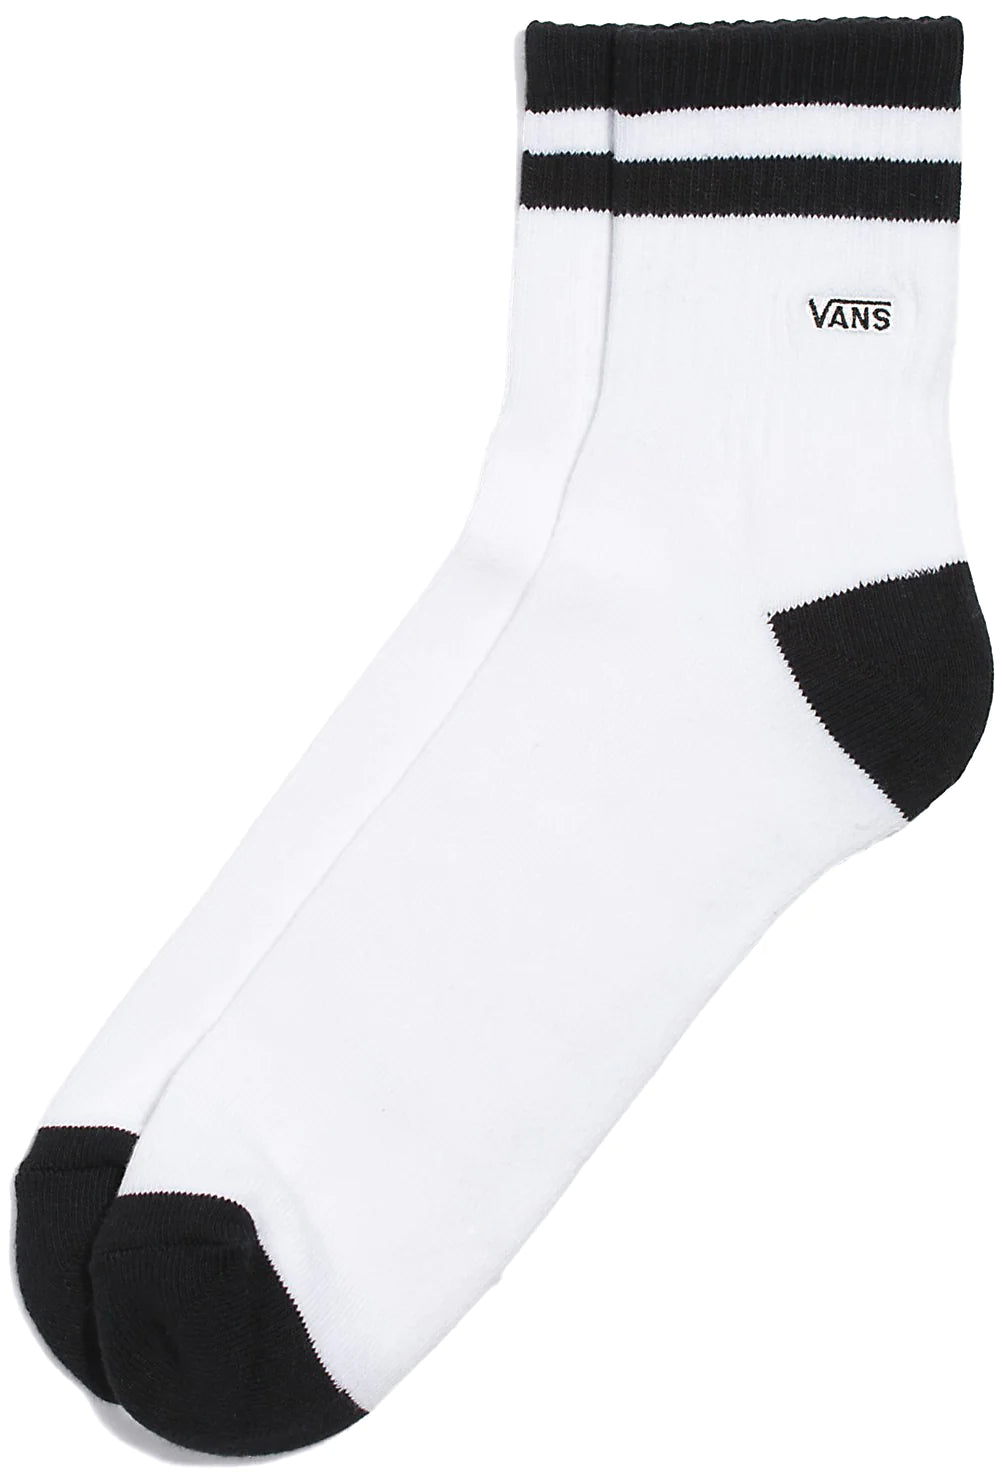 Vans - Half Crew Socks (6.5-9) in White/Black